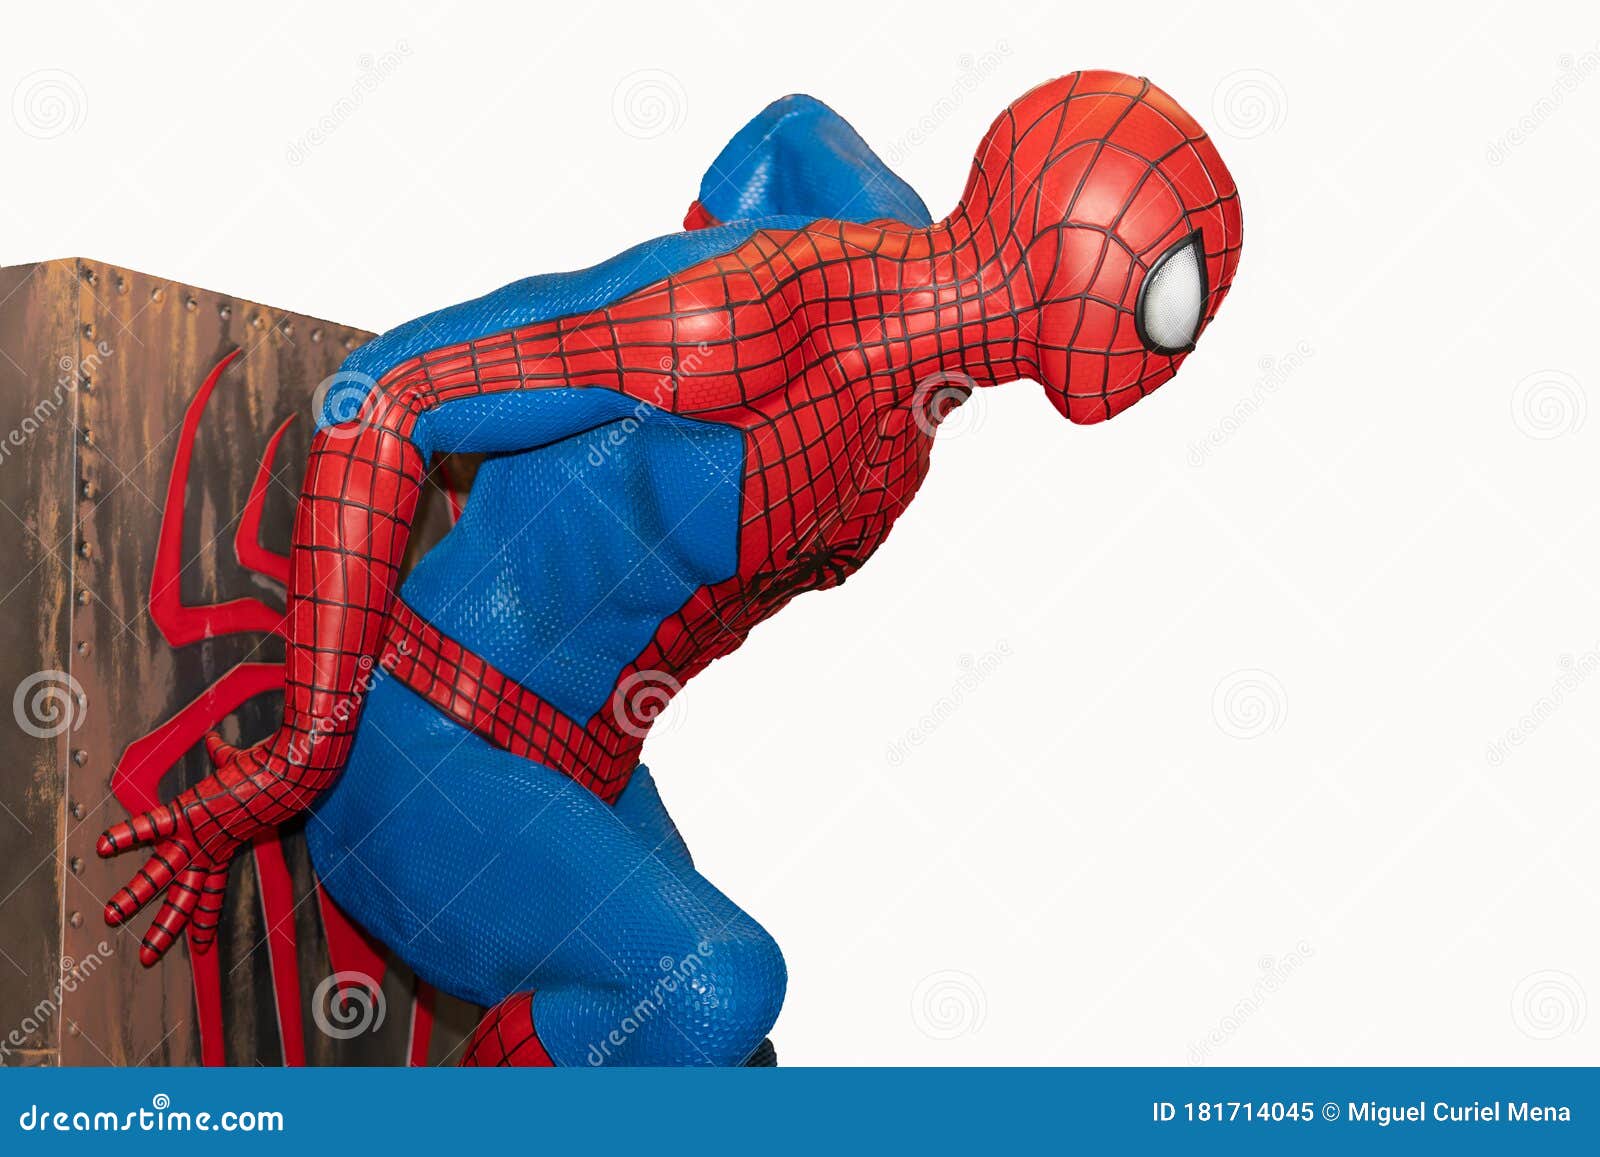 Với mô hình siêu anh hùng Spider-Man này, bạn sẽ có thể chiêm ngưỡng một trong những phiên bản đẹp nhất của người nổi tiếng nhất trong series truyện tranh Marvel. Với độ chính xác và chi tiết đáng kinh ngạc, mô hình này sẽ đem đến một trải nghiệm thú vị cho người hâm mộ của Spider-Man. (With this Spider-Man superhero model, you will be able to admire one of the most beautiful versions of the most famous character in the Marvel comic book series. With amazing accuracy and detail, this model will bring an exciting experience for Spider-Man fans.)